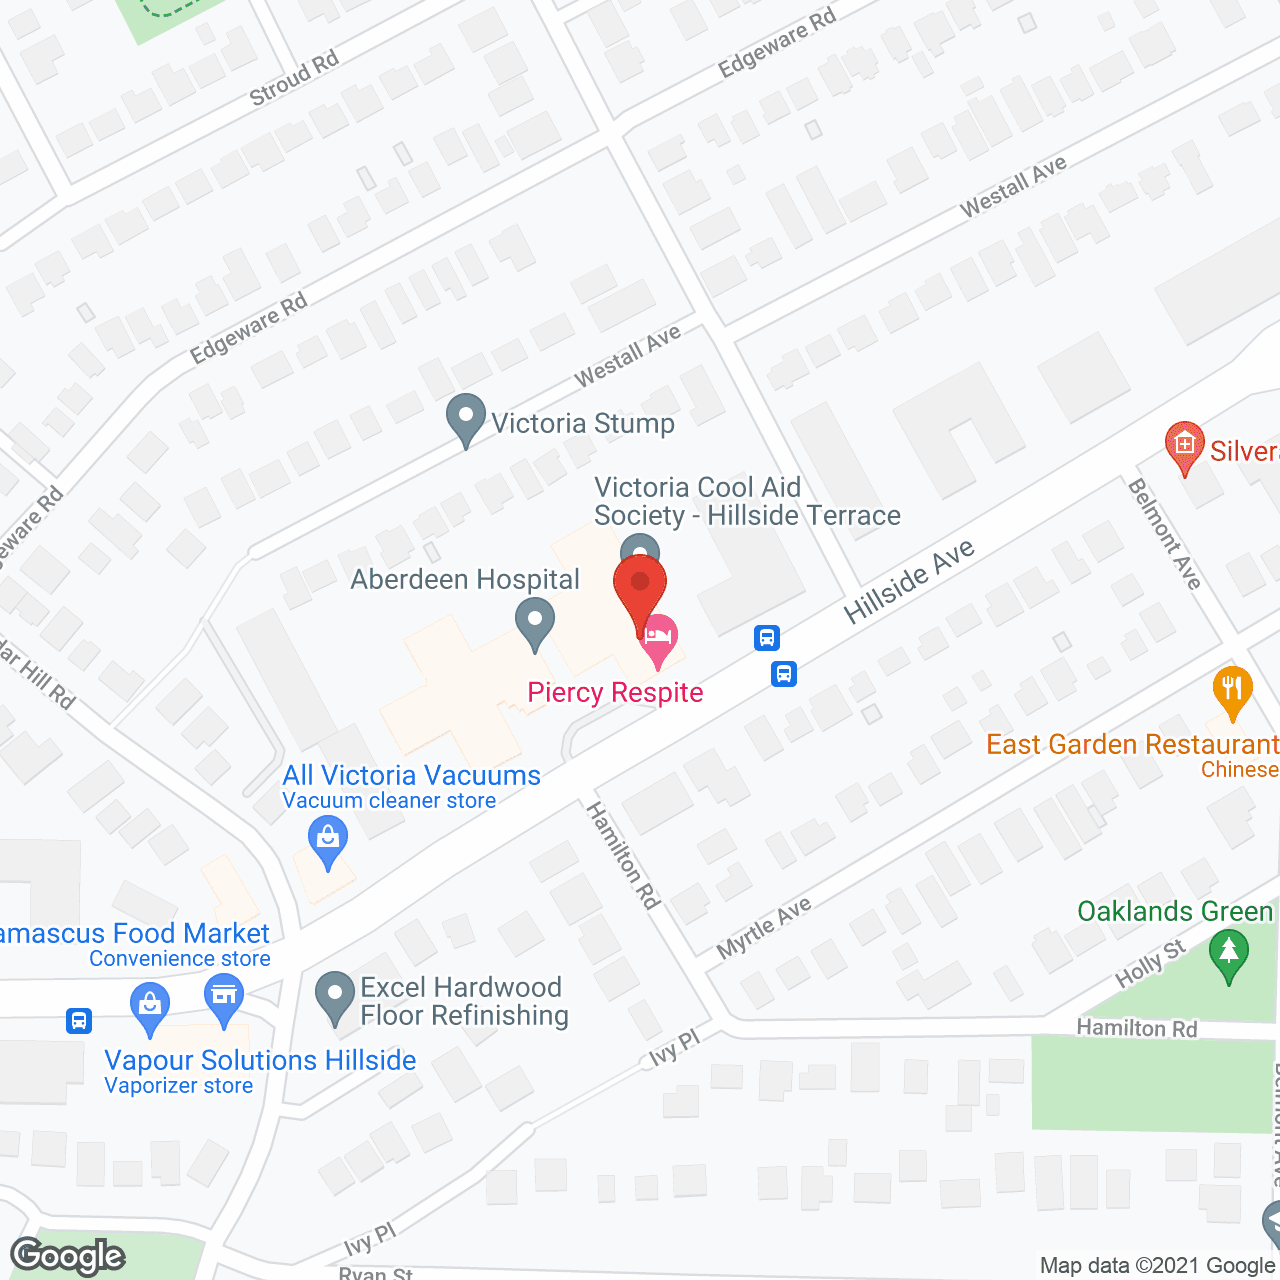 Hillside Terrace in google map